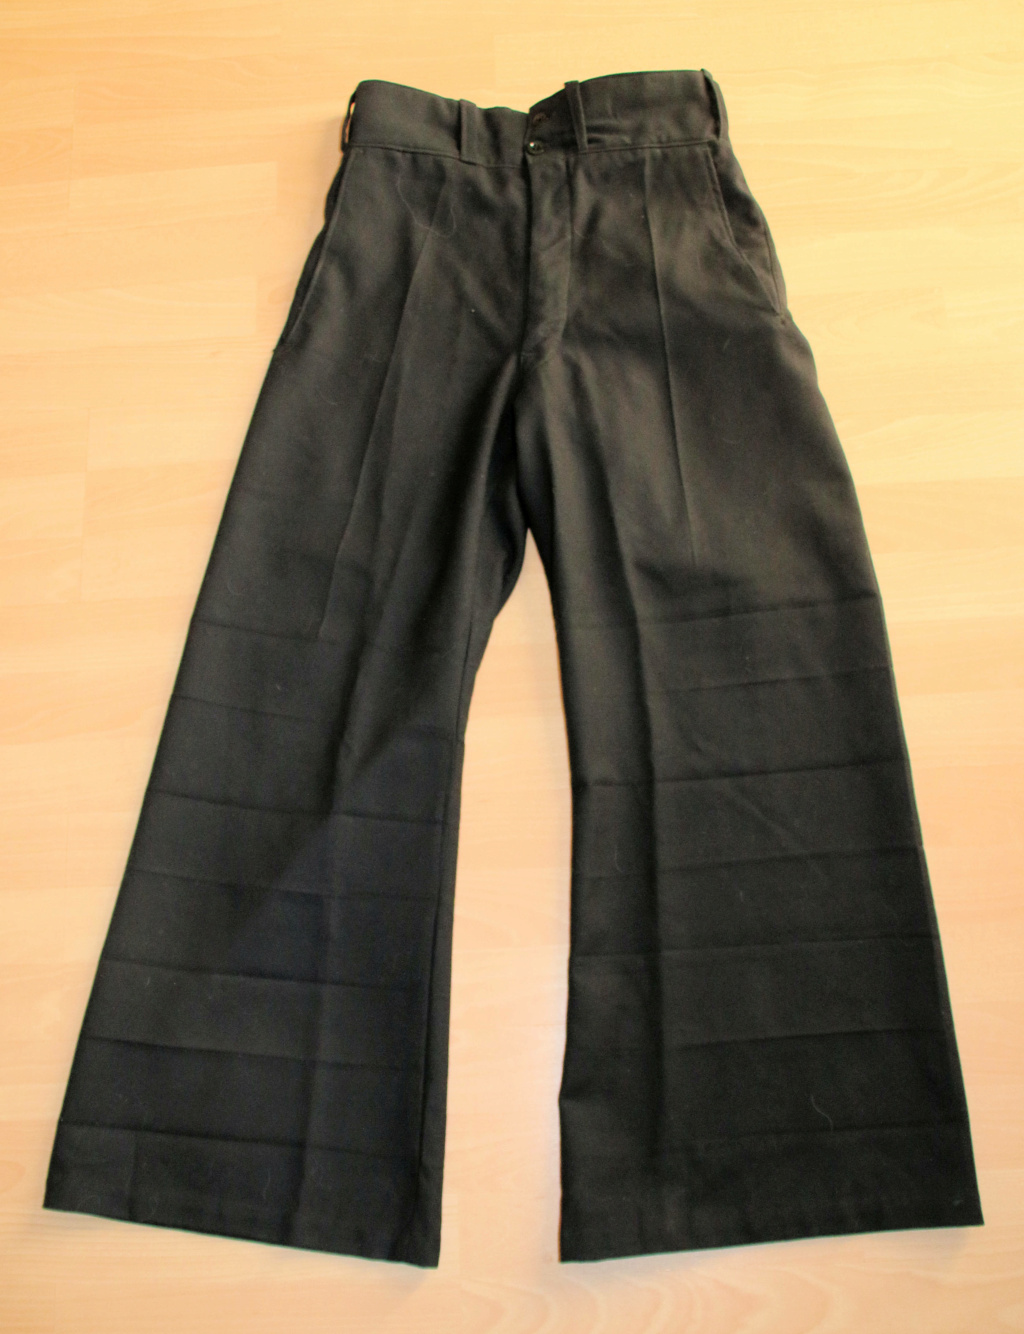 Le pantalon à 7 plis dit "Nelson" ou "7 mers" Pantal11